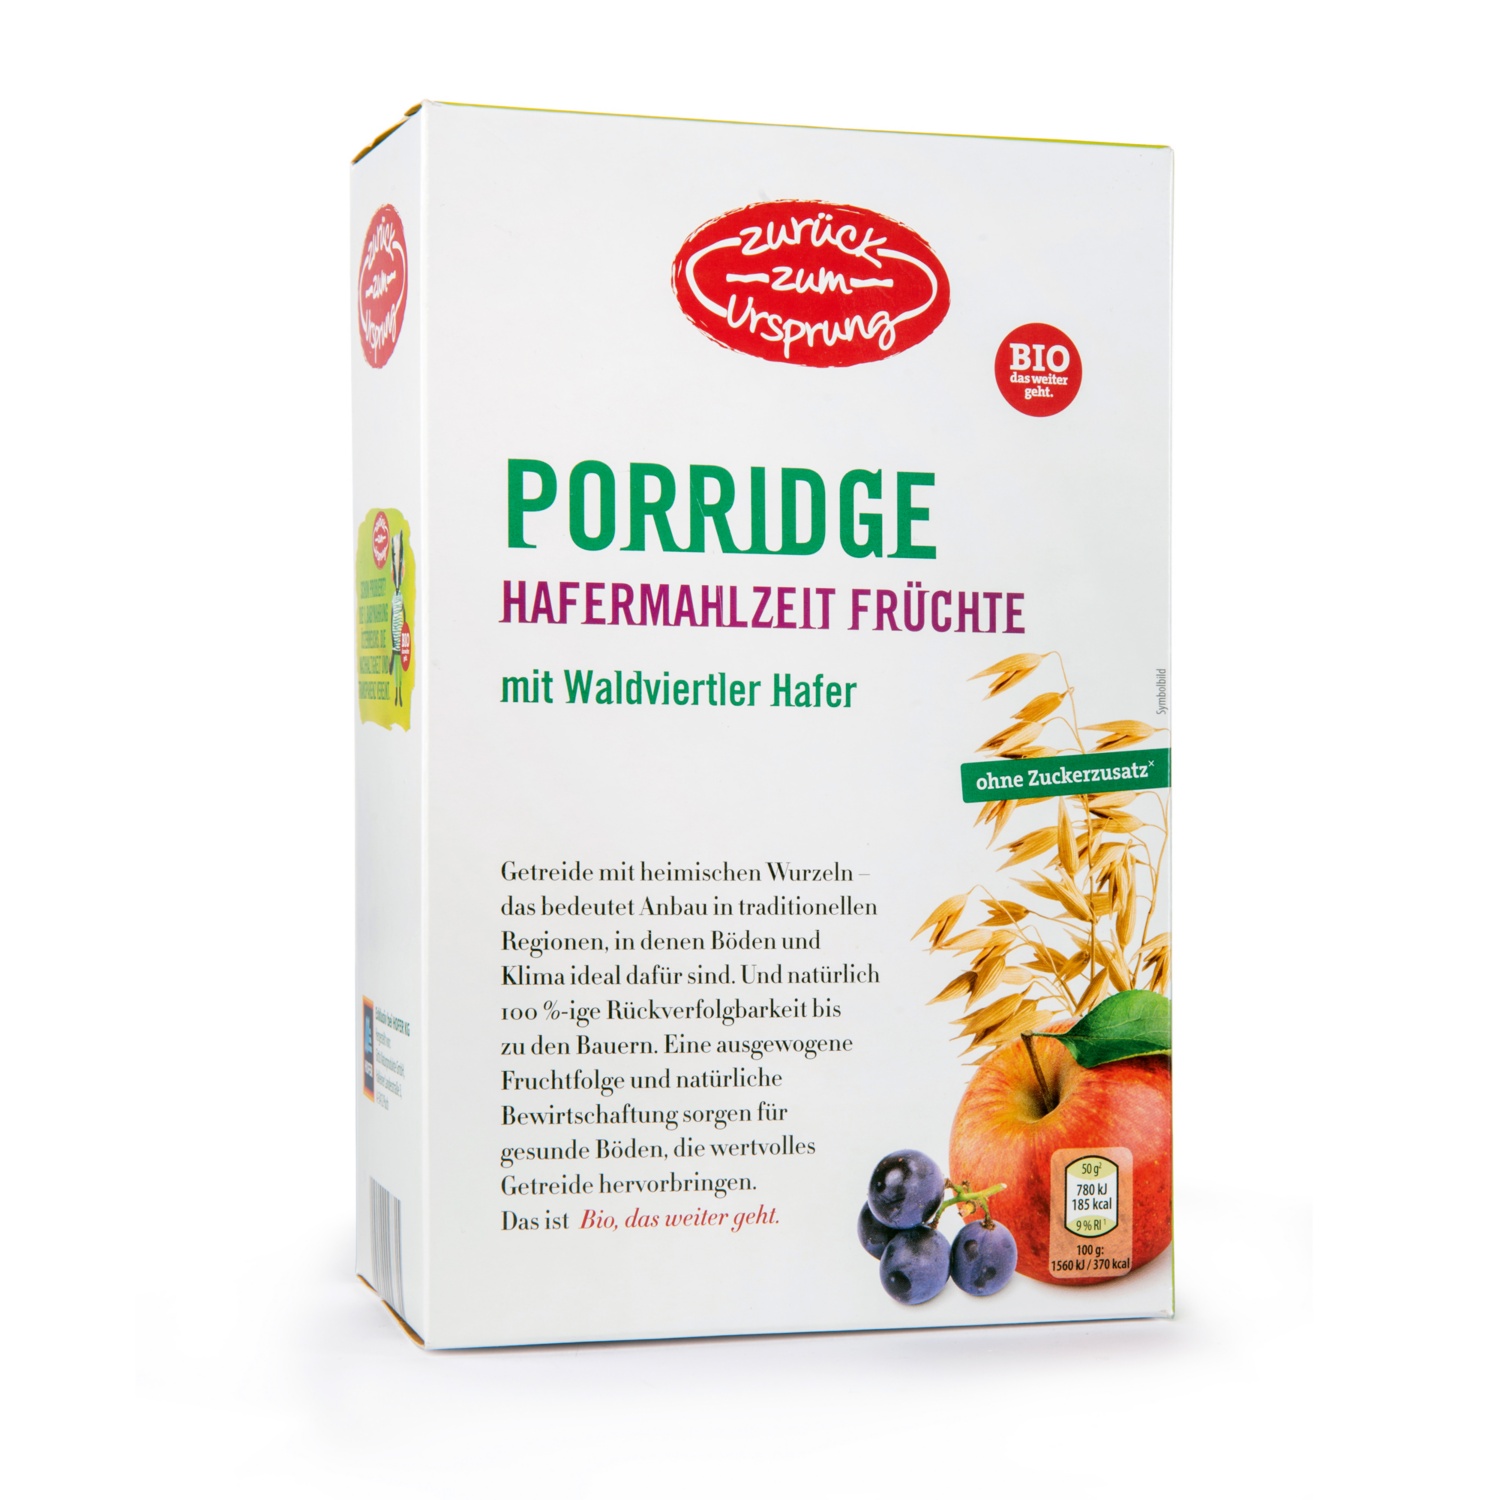 ZURÜCK ZUM URSPRUNG BIO-Porridge Früchte